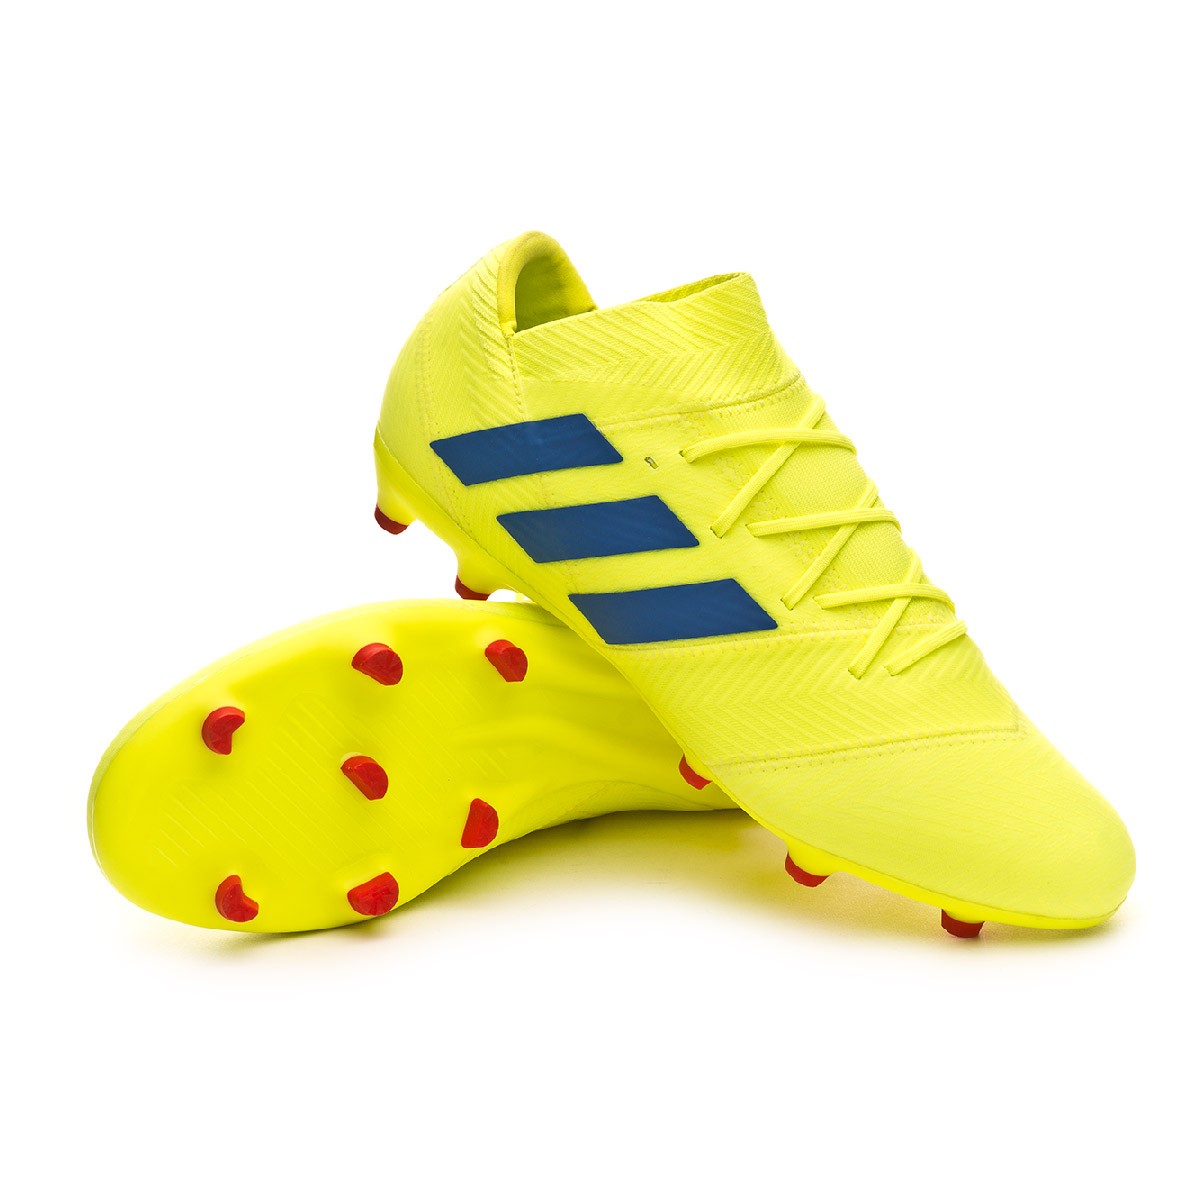 Football Boots adidas Nemeziz 18.2 FG Solar yellow-Football blue 